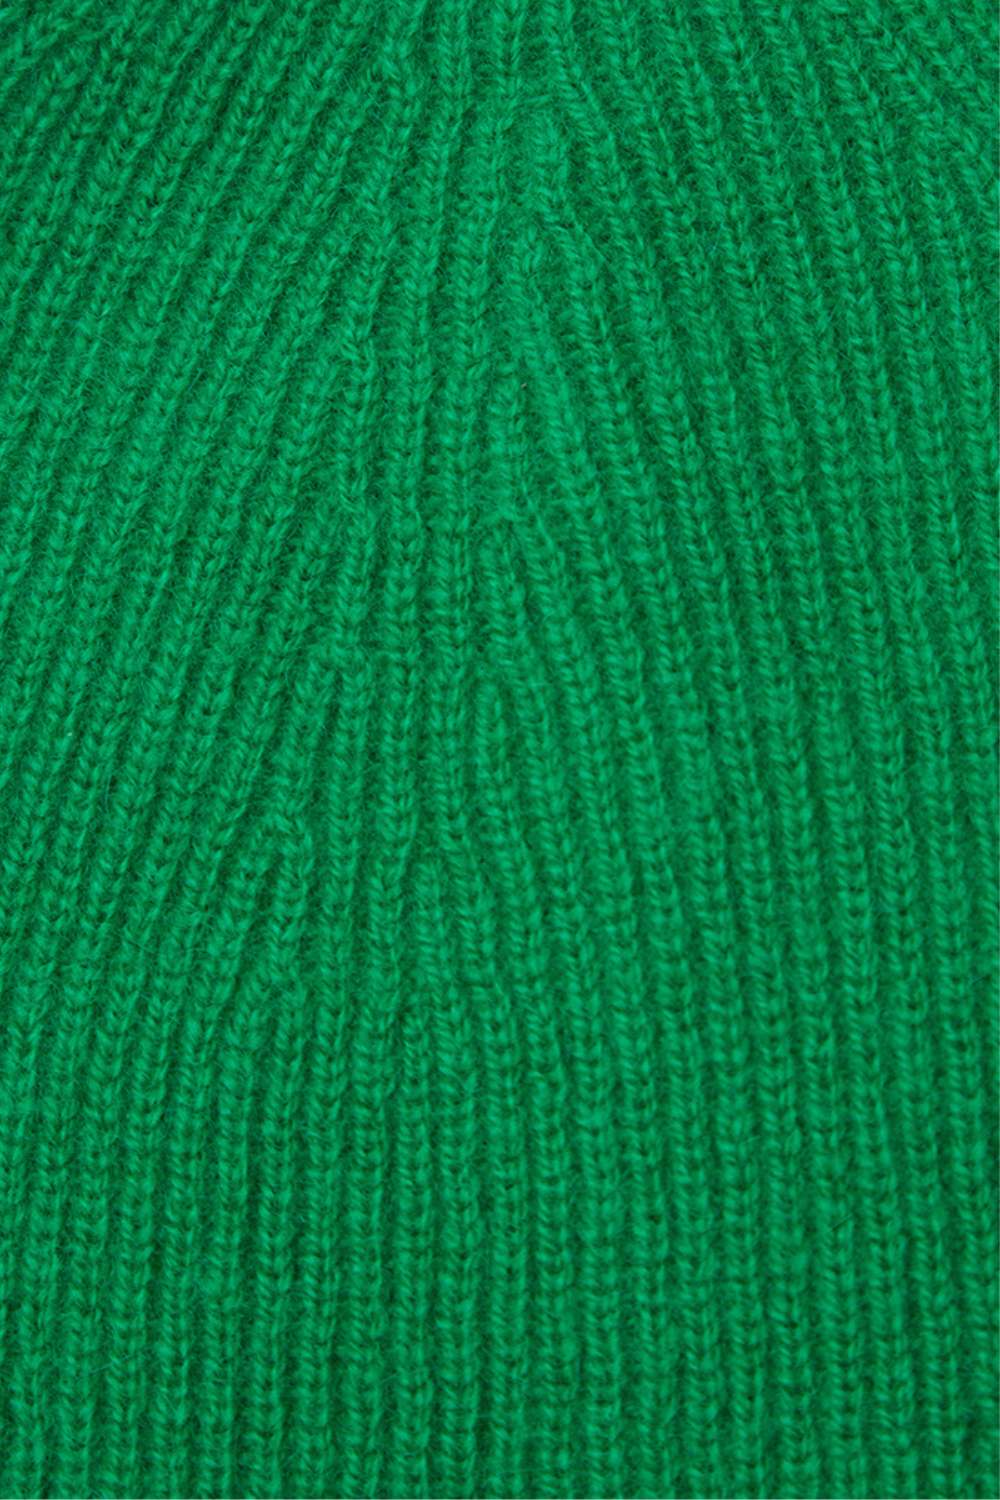 Зеленая шапка из кашемира